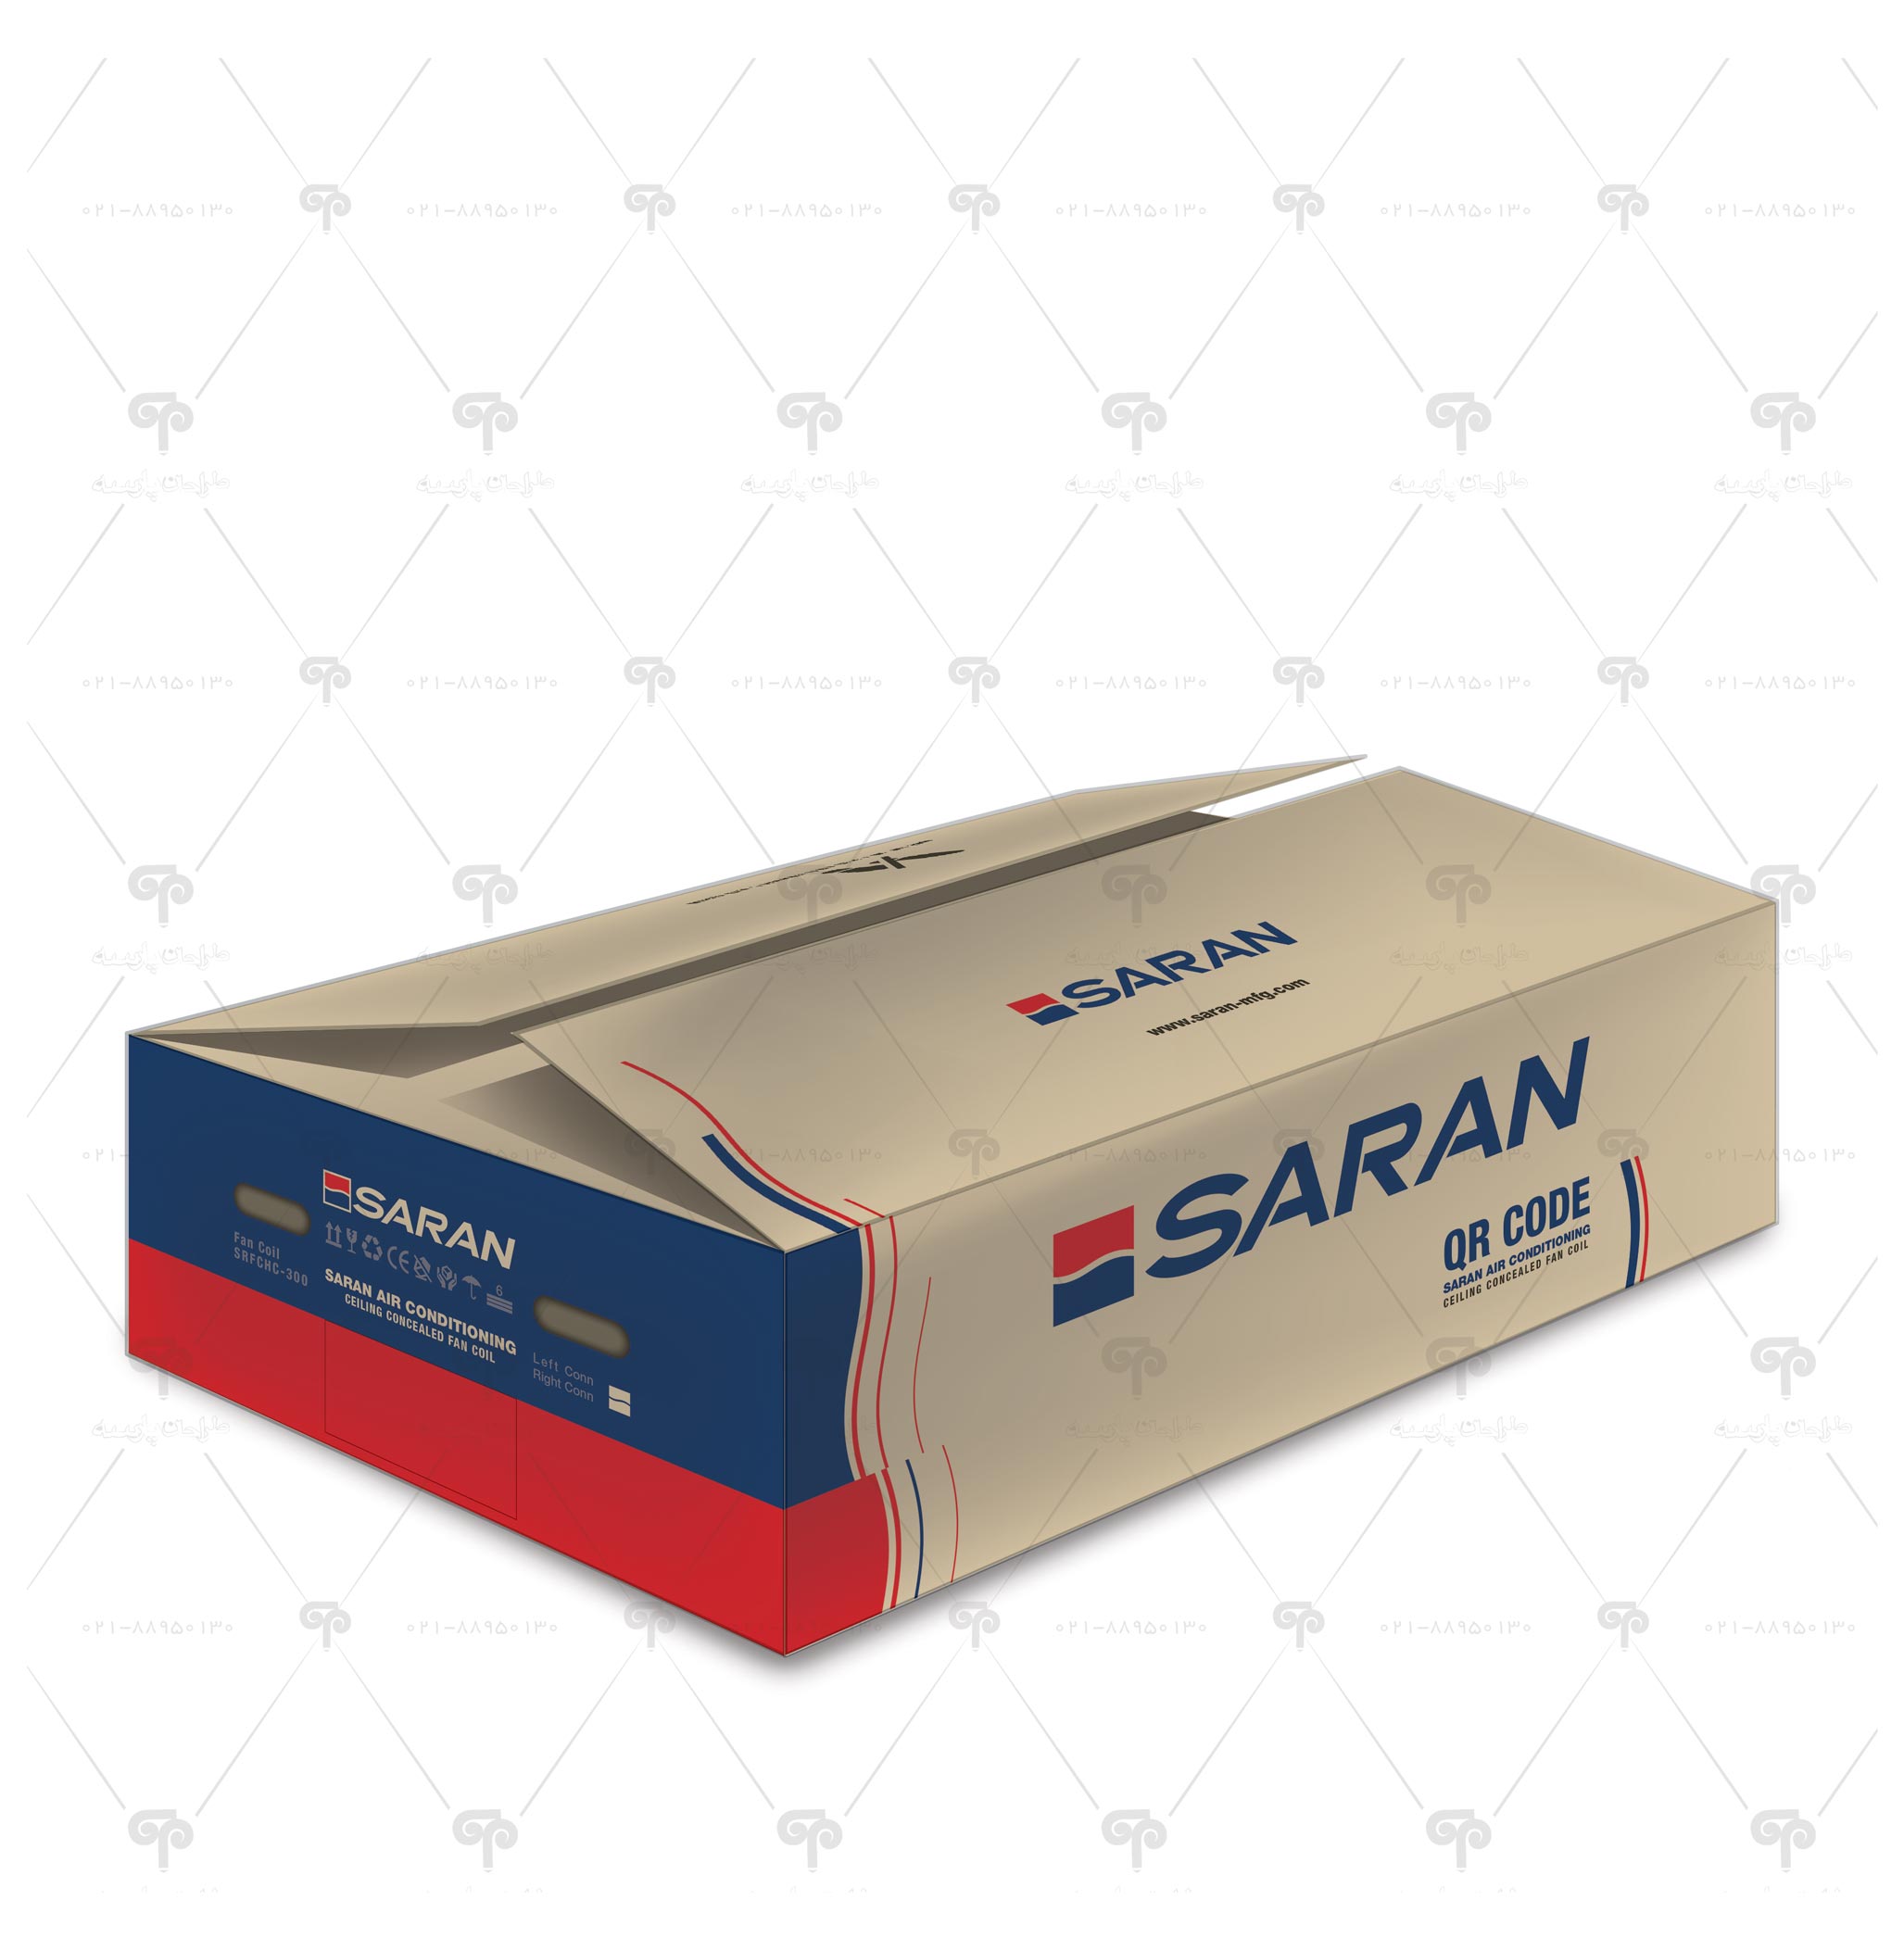 طراحی جعبه شرکت ساران